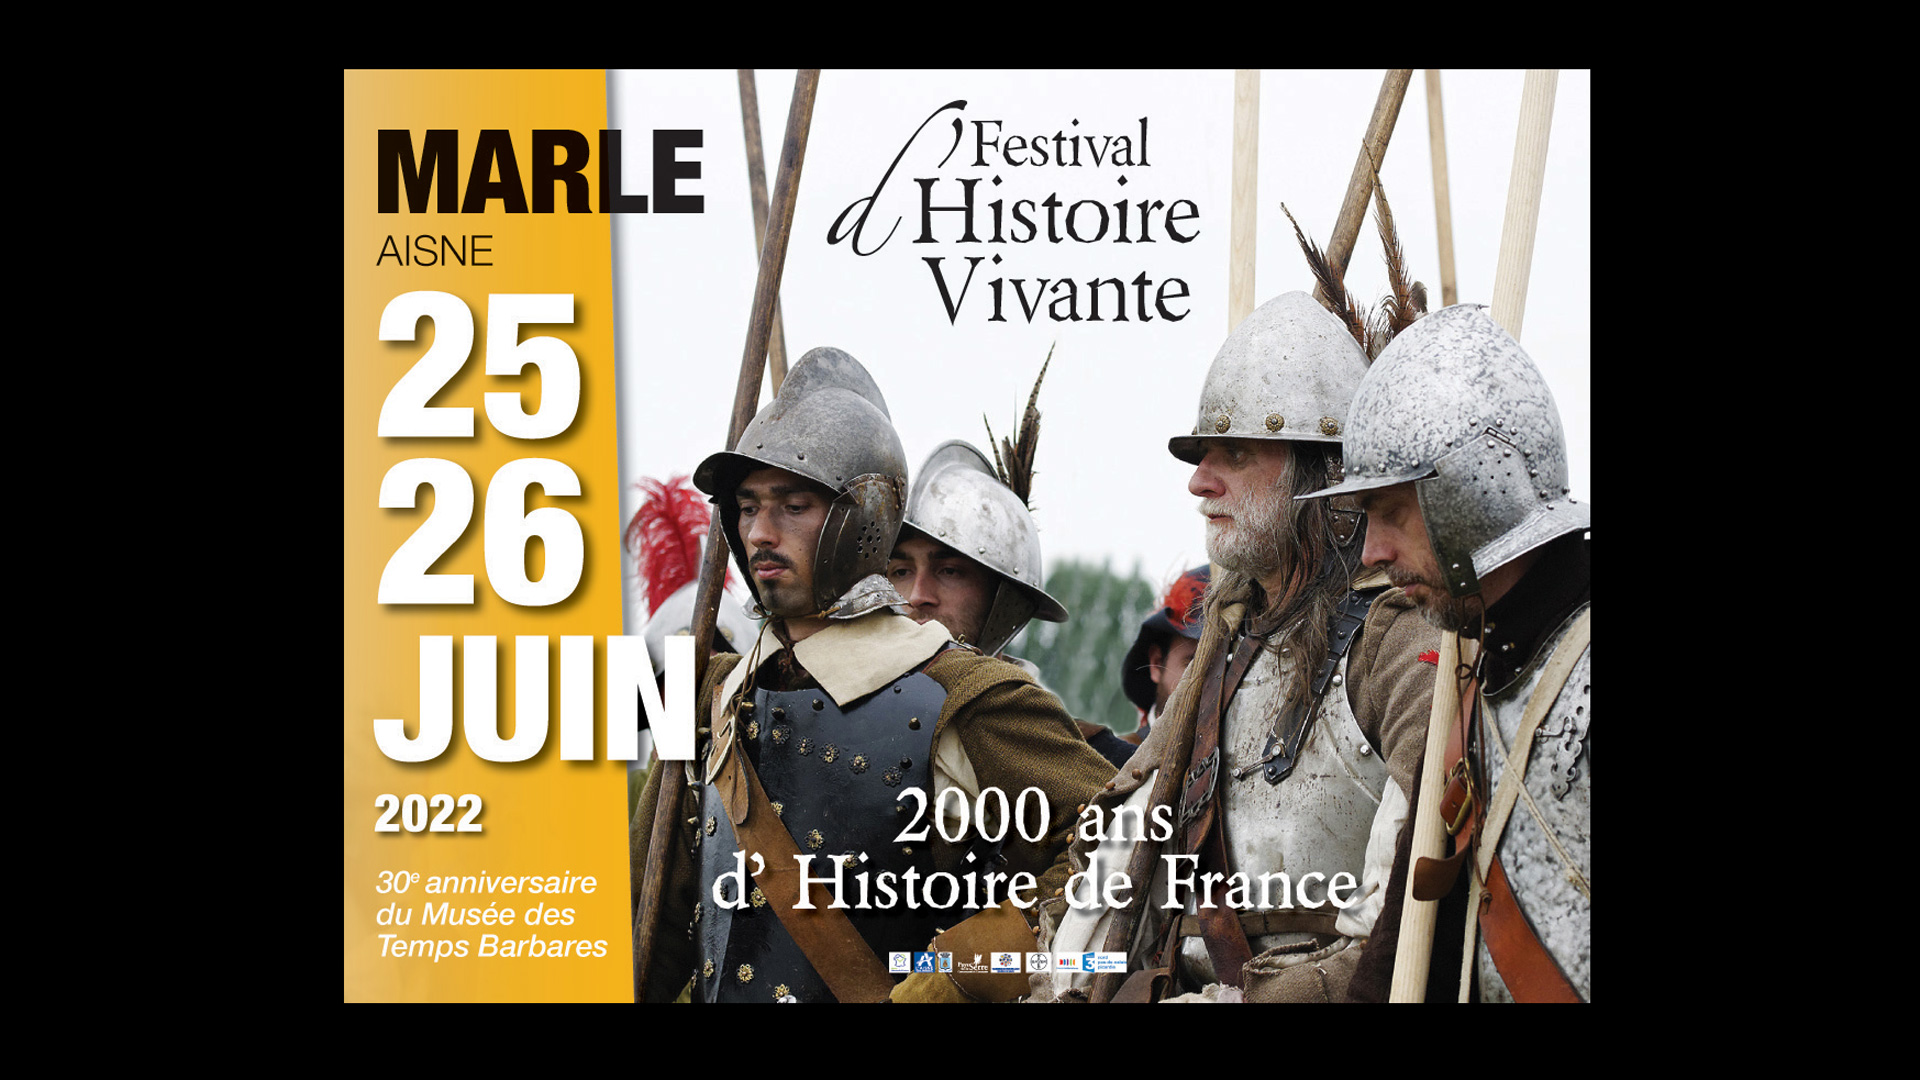 Marle 25 - 26 Juin Festival d'histoire vivante